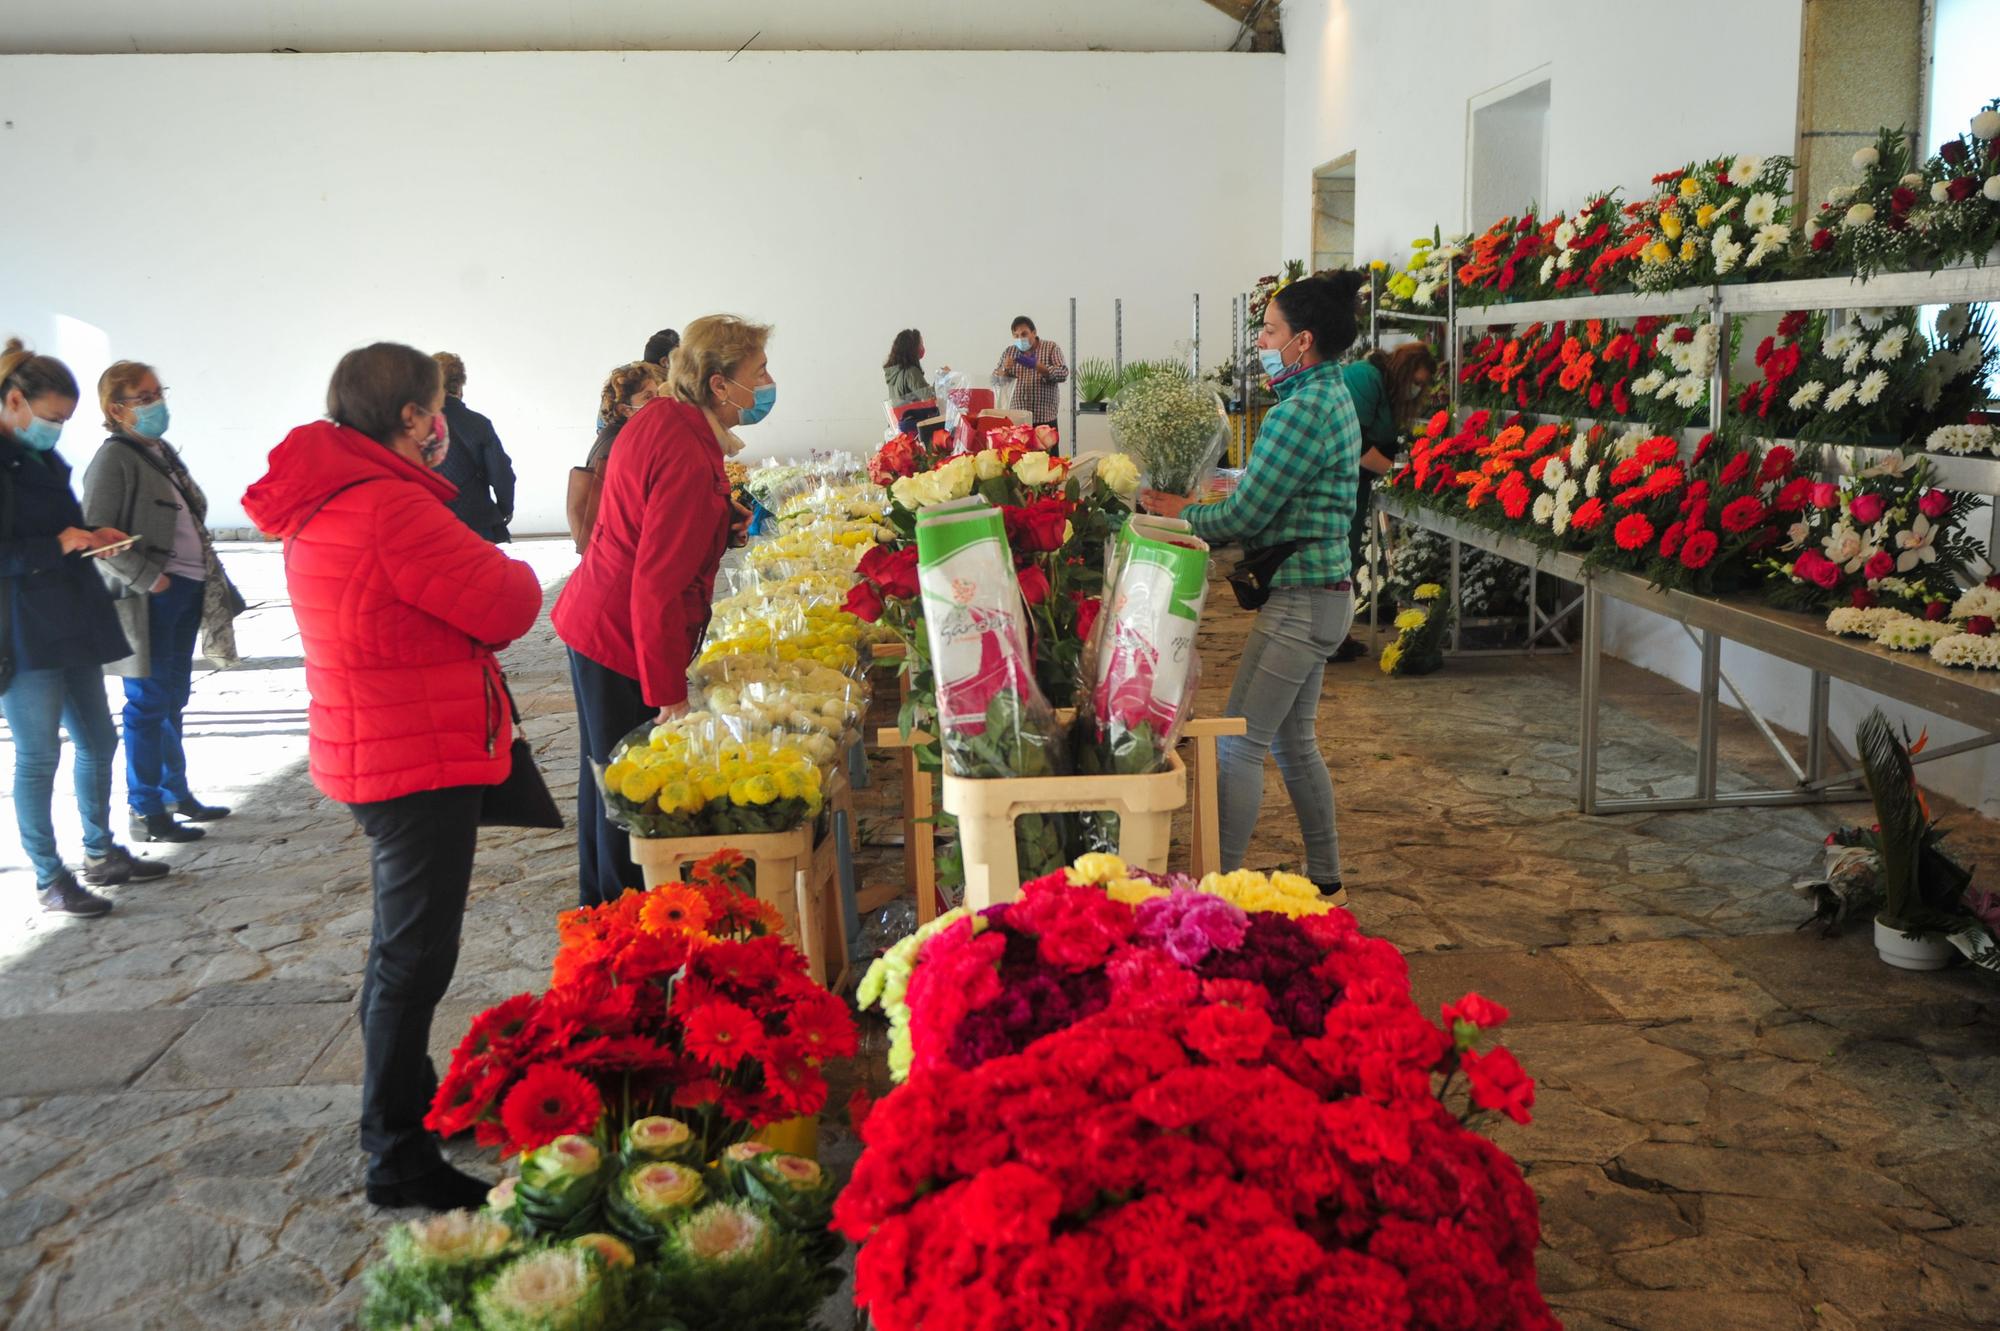 El Mercado das Flores en la Praza da Peixería.